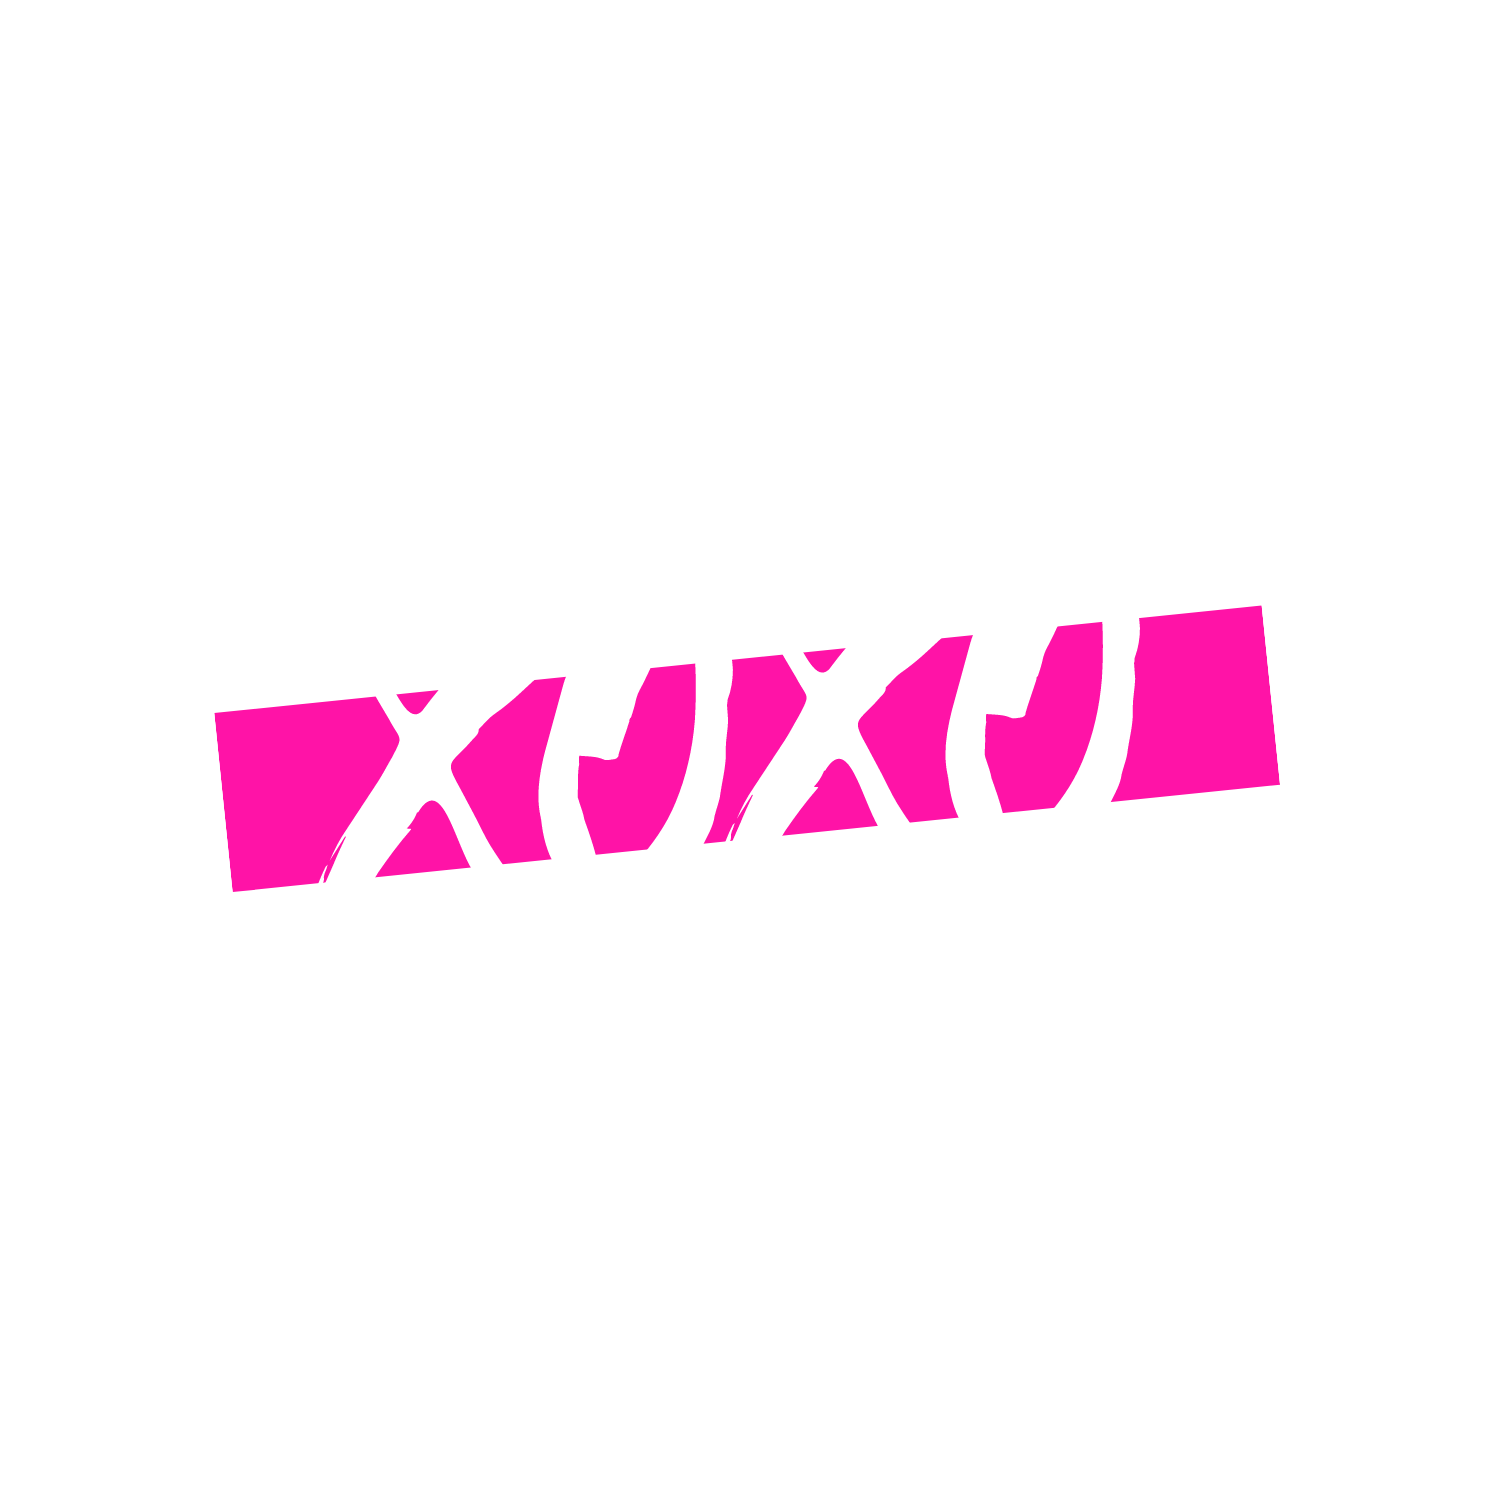 Becker Gray